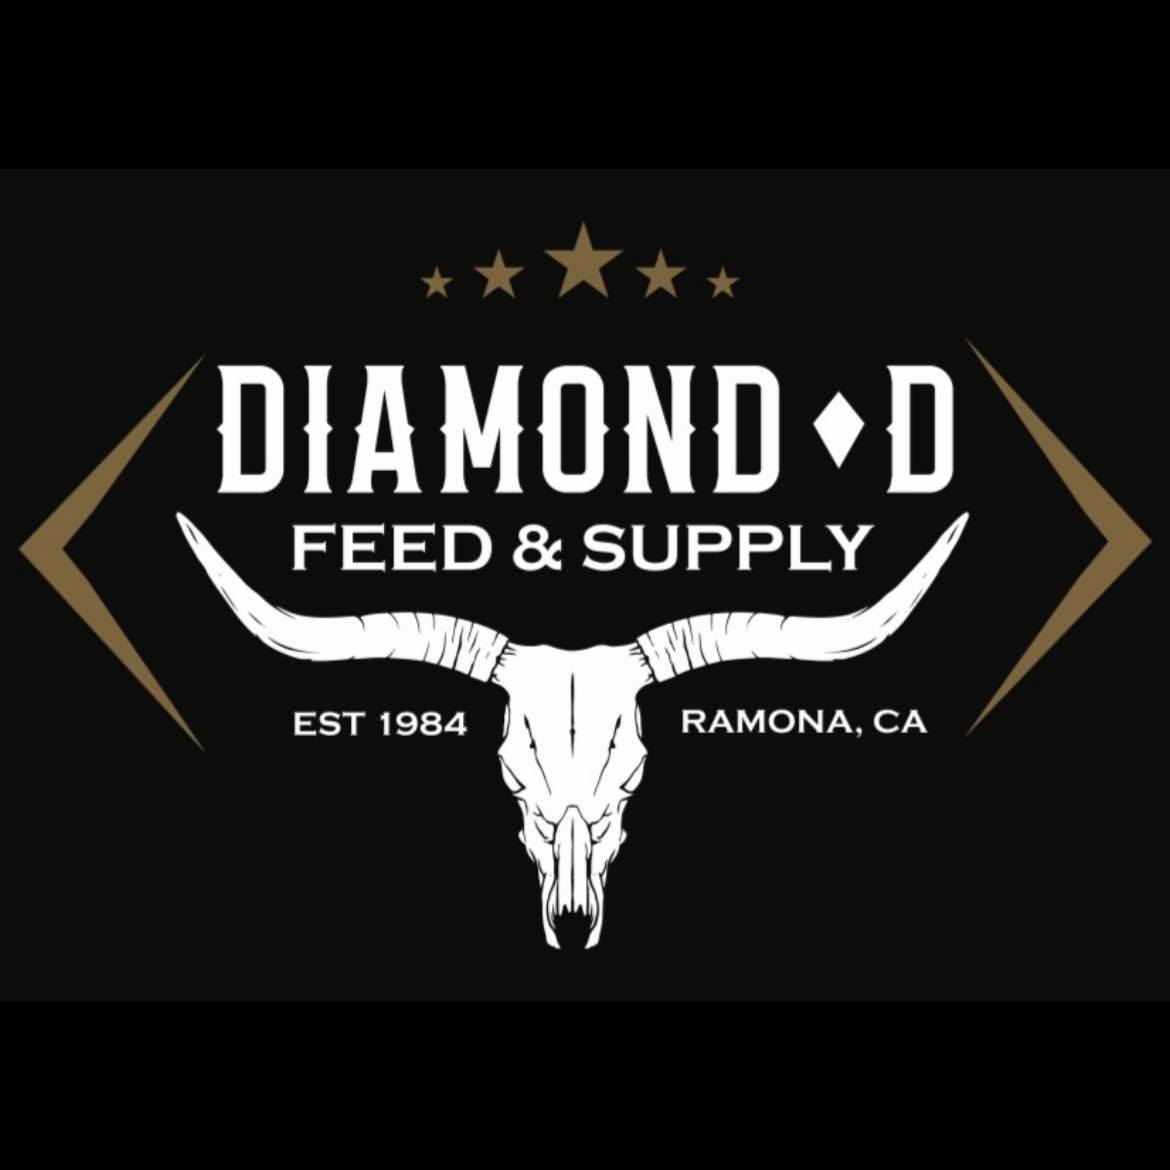 Diamond D Feed & Supply Co. Logo